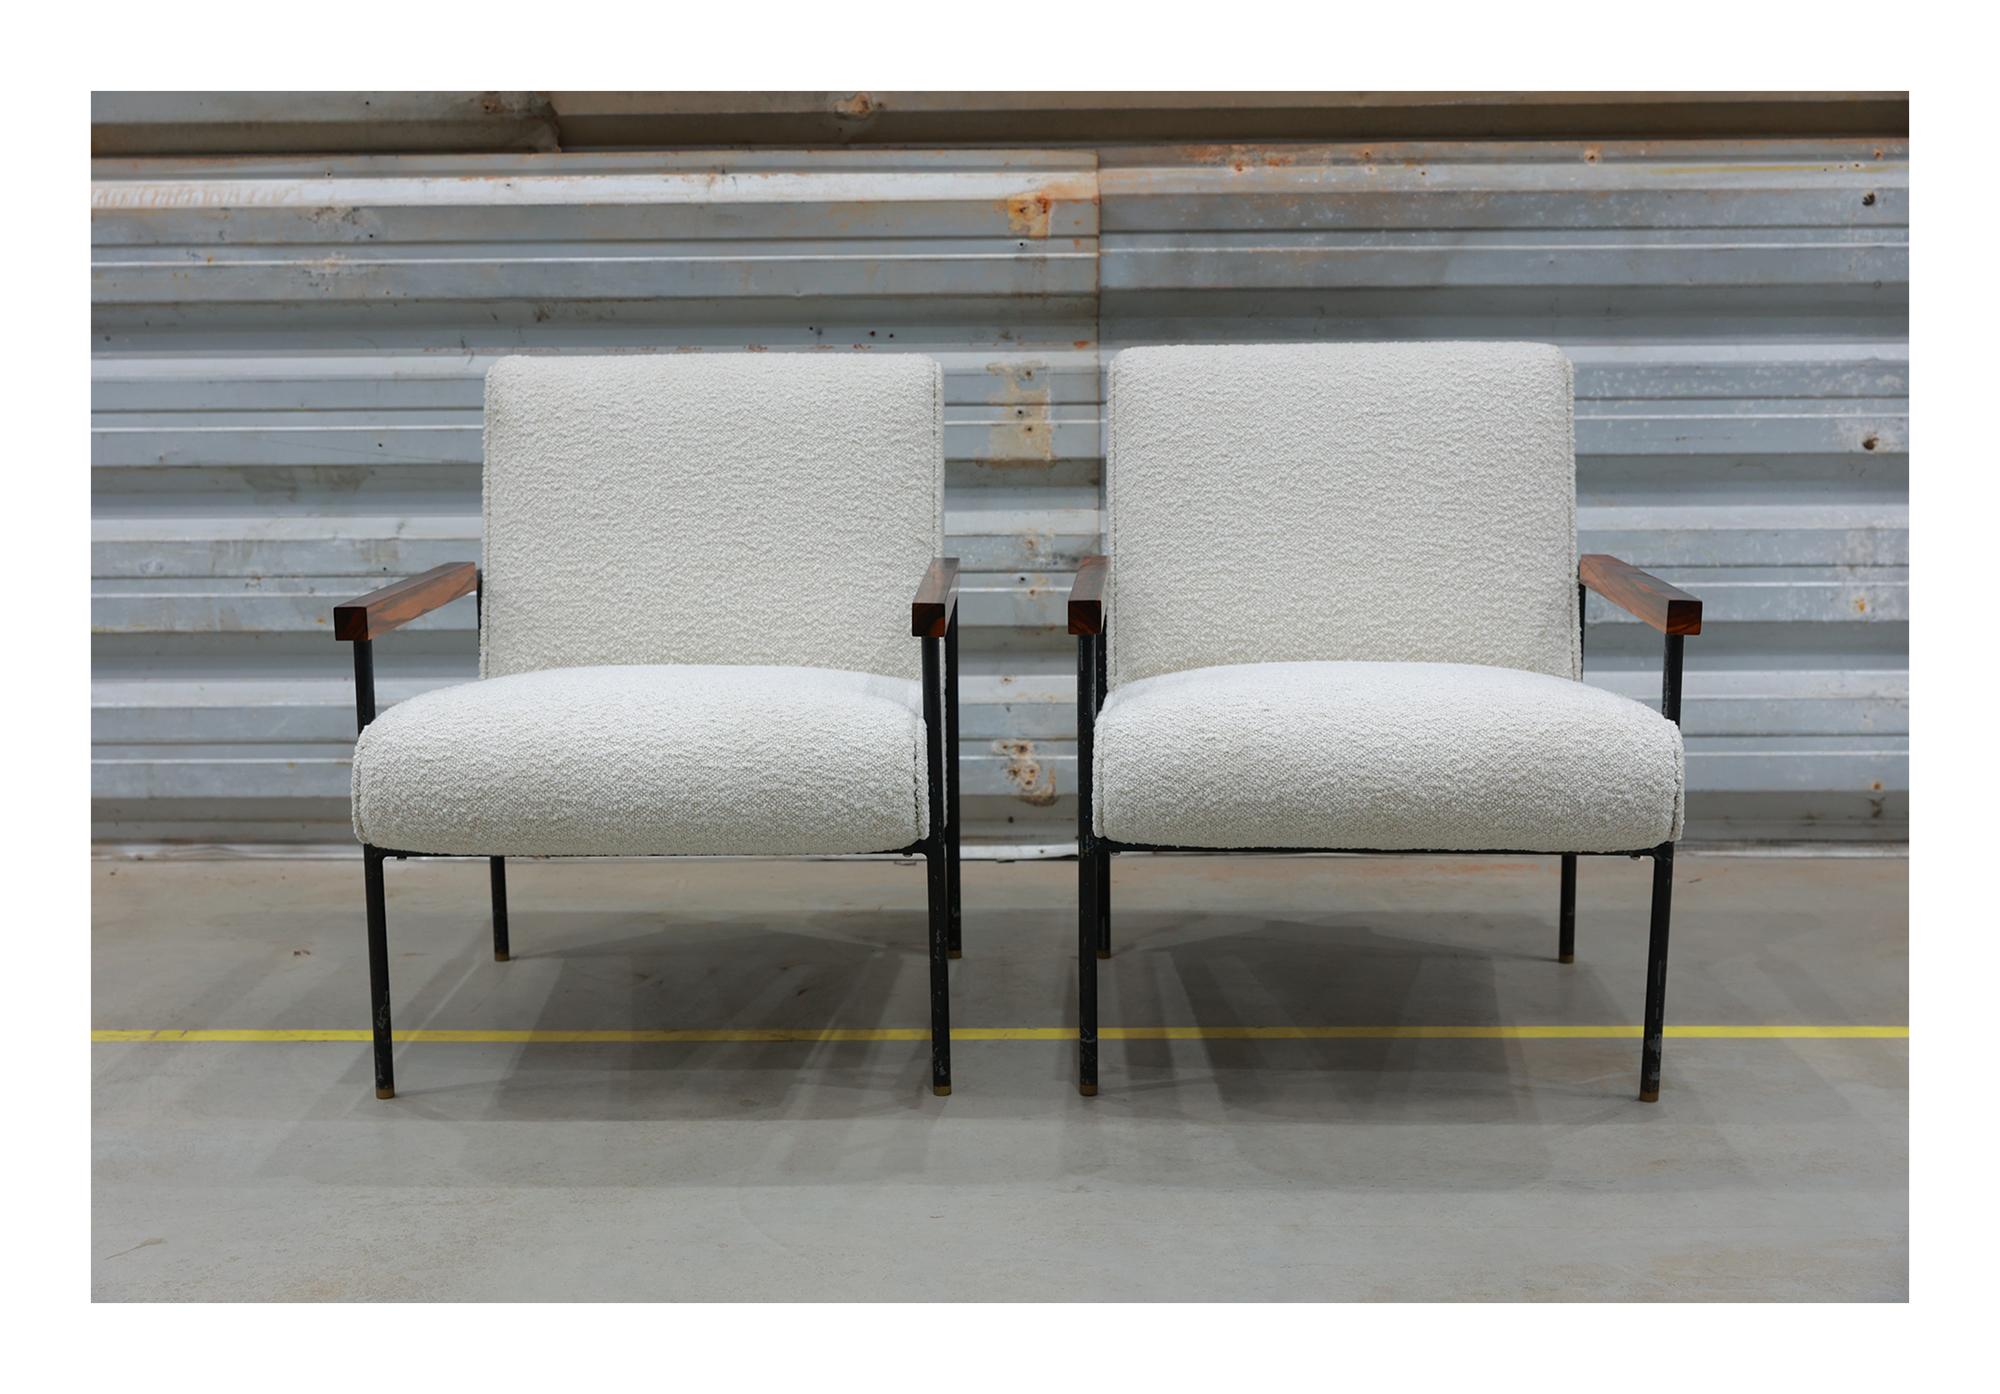 Disponibles aujourd'hui, ces fauteuils Brazilian Modern conçus par Geraldo de Barros ne sont rien moins que magnifiques. 

Ces fauteuils intemporels ont été conçus par Geraldo de Barros pour sa propre entreprise Unilabor dans les années 1950. Il